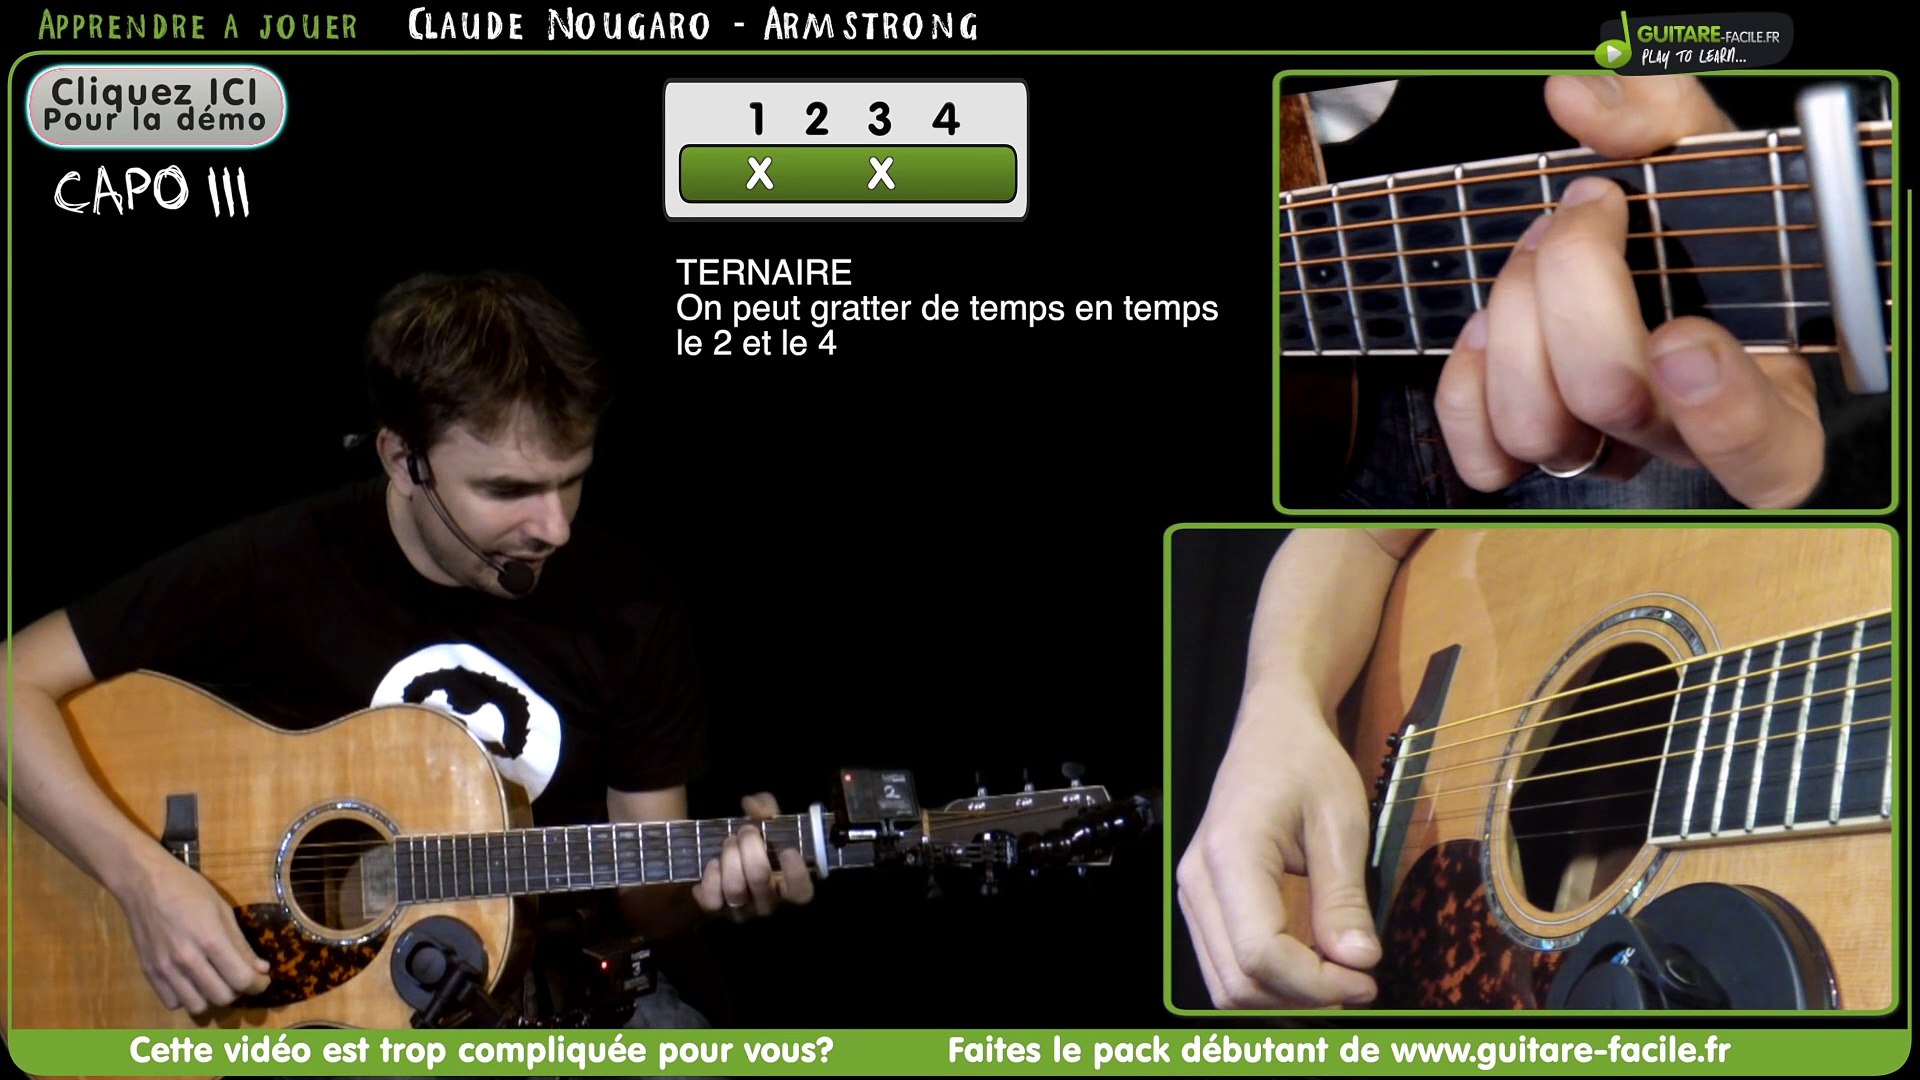 Apprendre Armstrong de Claude Nougaro - Tuto Guitare - Vidéo Dailymotion